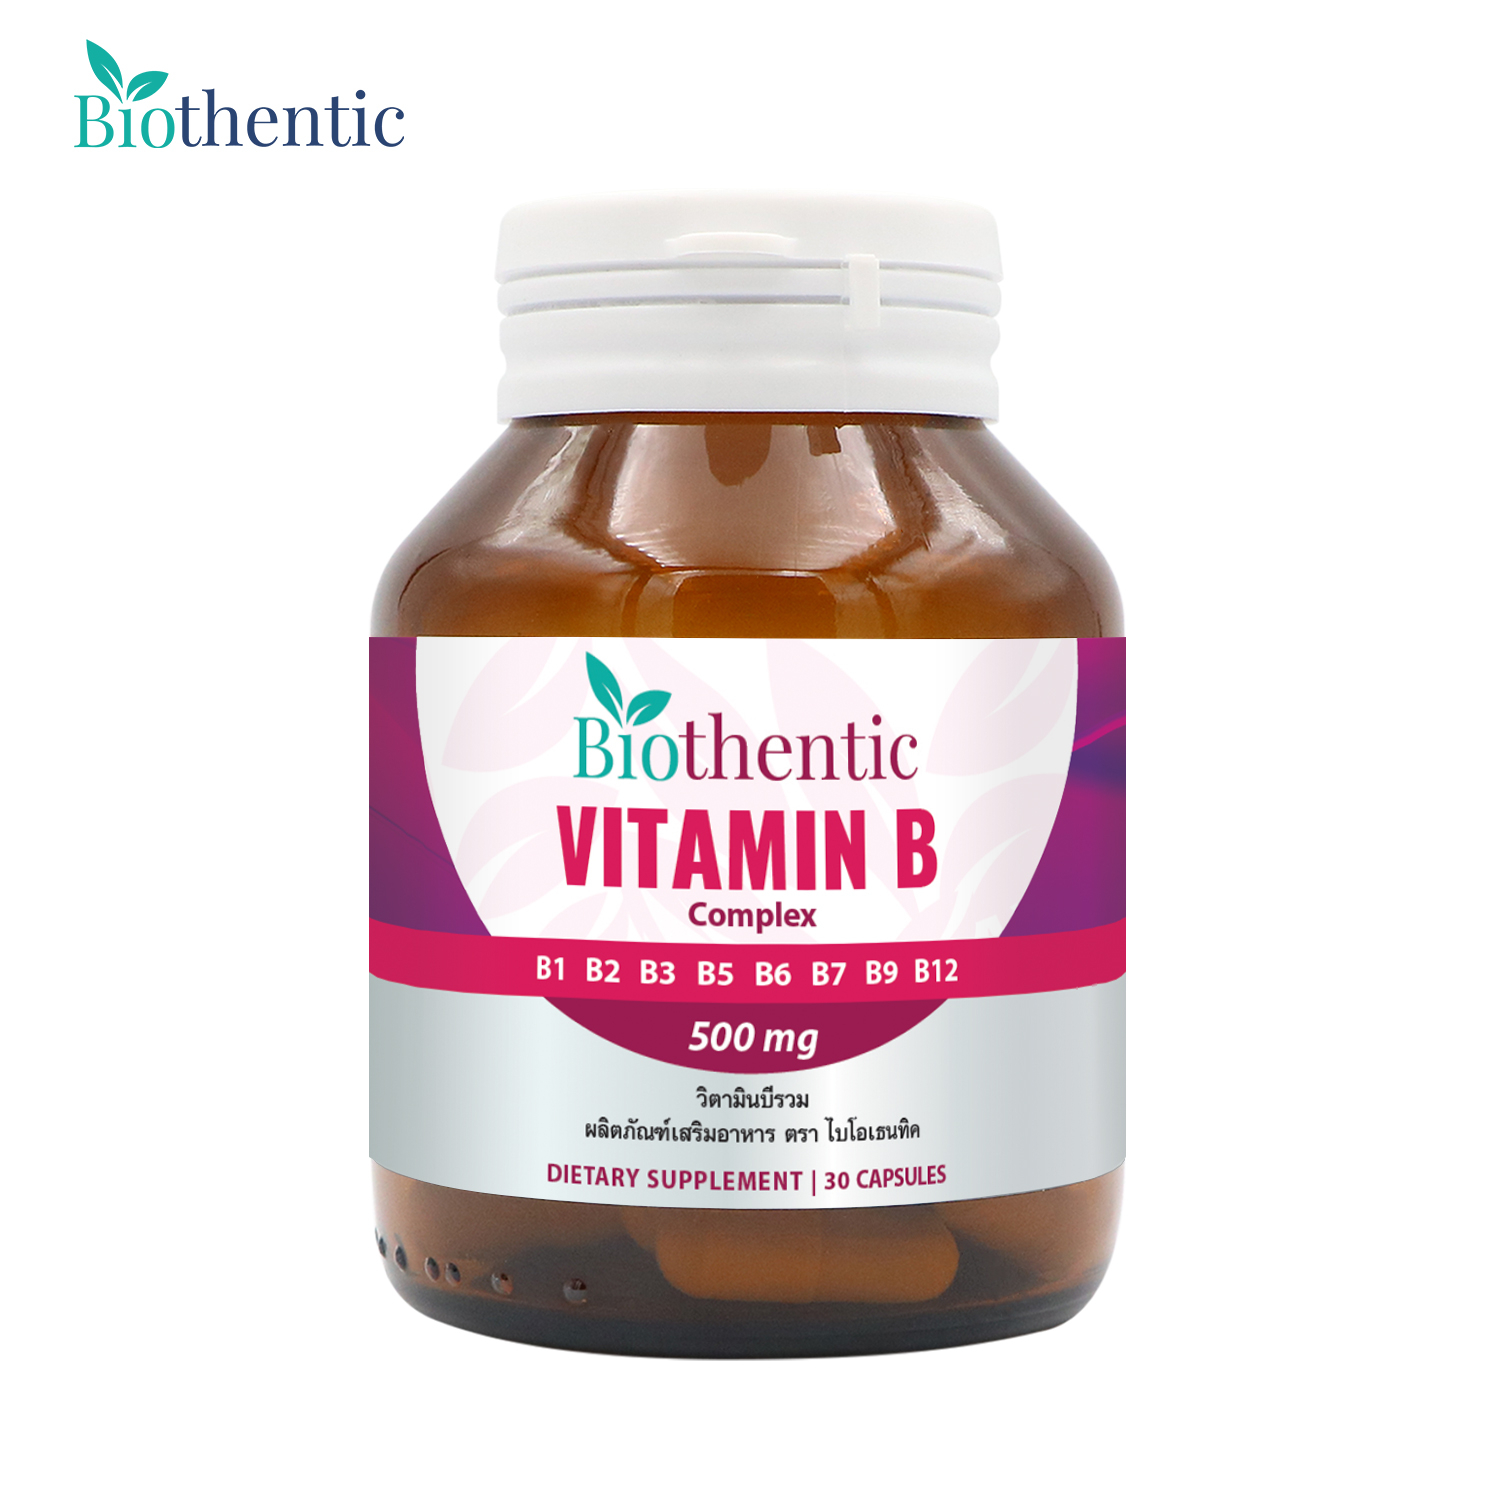 [++ดีลเด็ด++] วิตามินบีรวม x 1 ขวด ไบโอเธนทิค Vitamin B Complex Biothentic Vitamin B1 B2 B3 B5 B6 B7 B9 B12